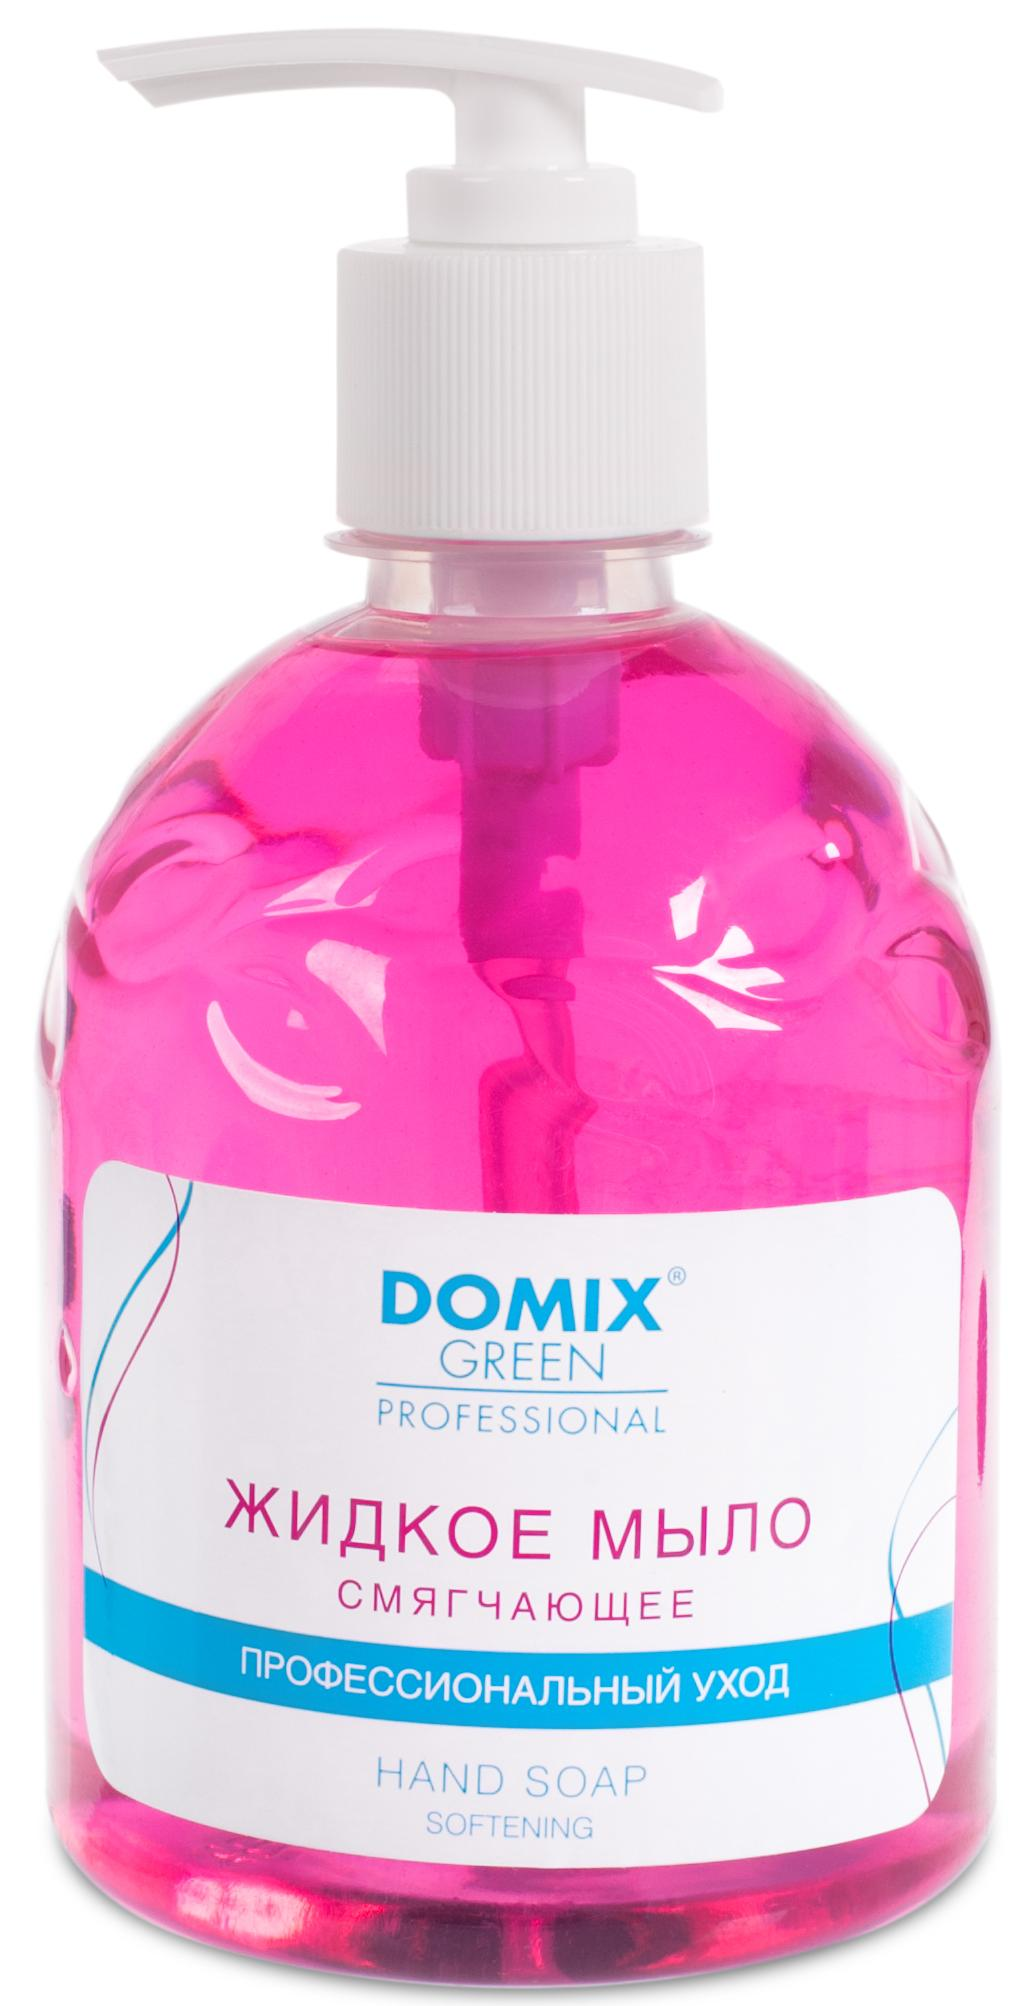 DOMIX Мыло жидкое смягчающее для профессионального ухода / DGP 500 мл nesti dante жидкое мыло luxury platinum soap